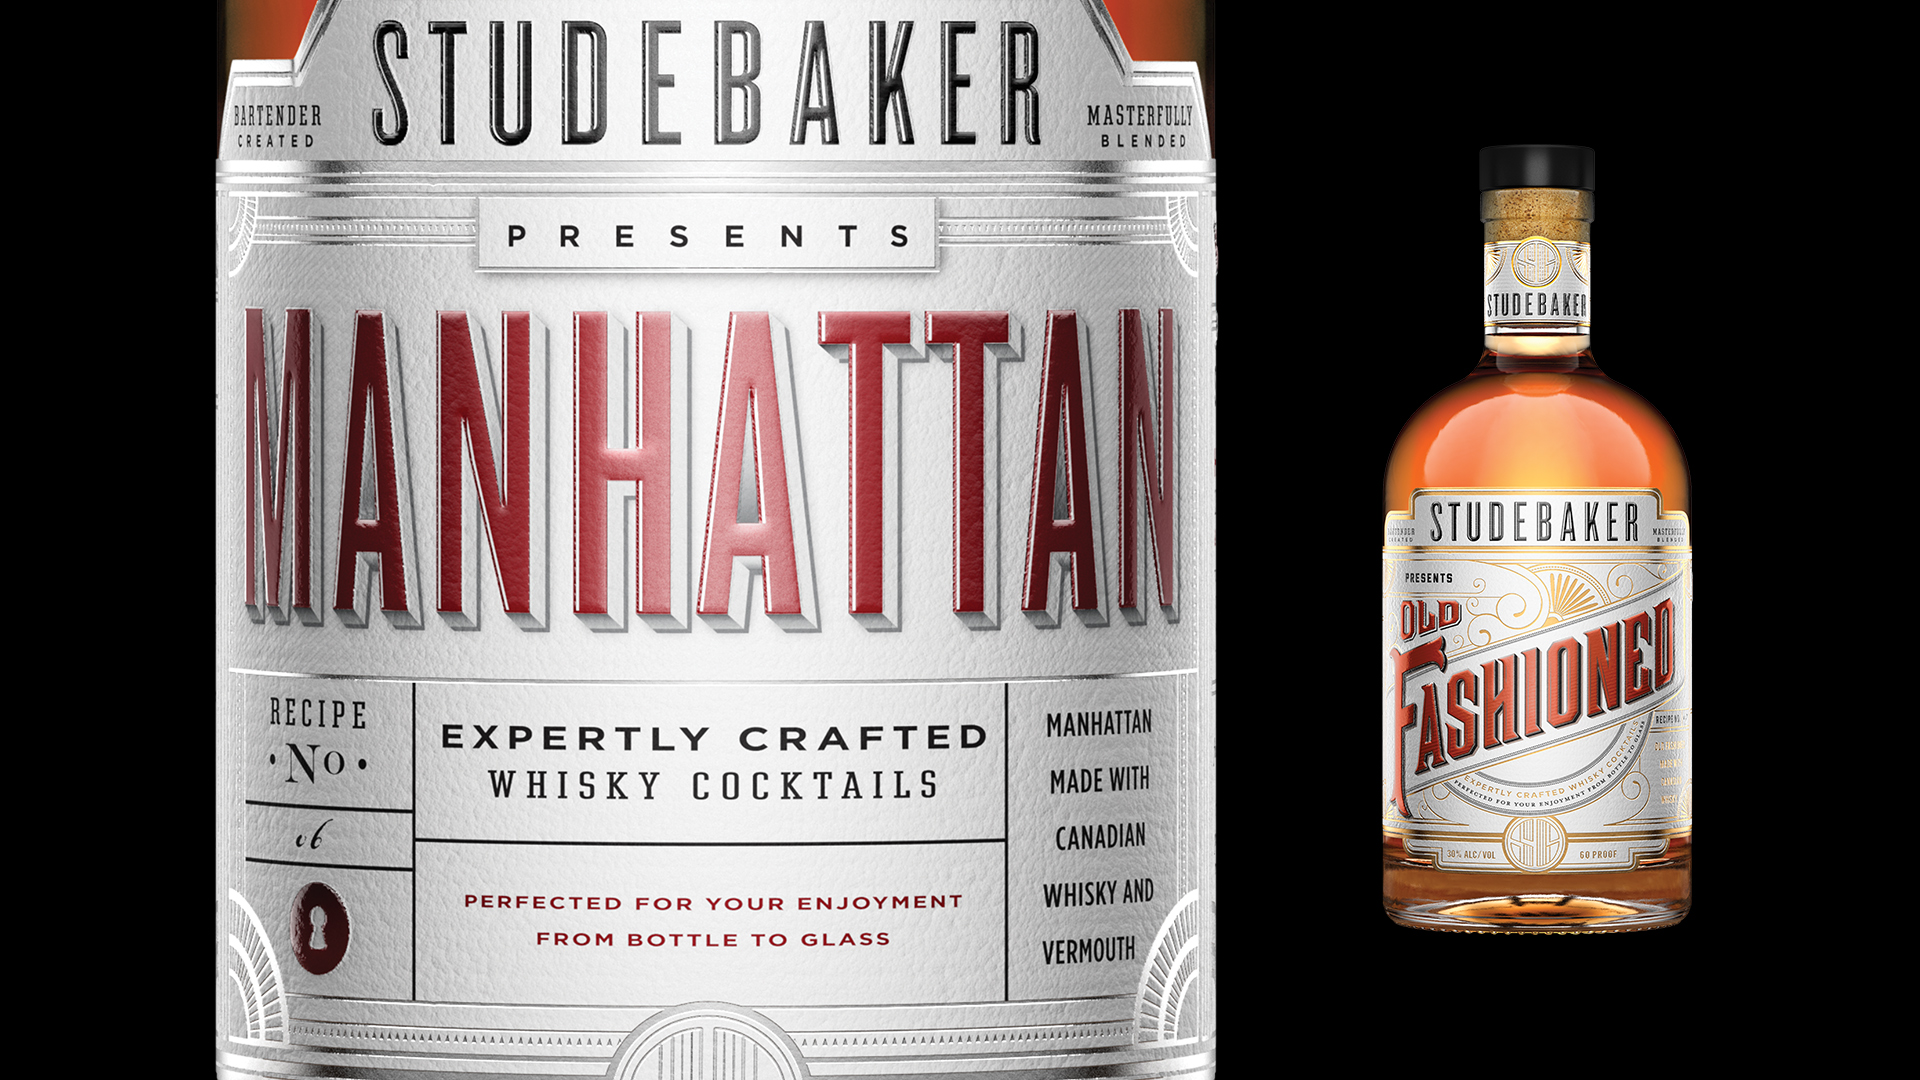 Studebaker Whisky Cocktails Manhattan Bottle Render